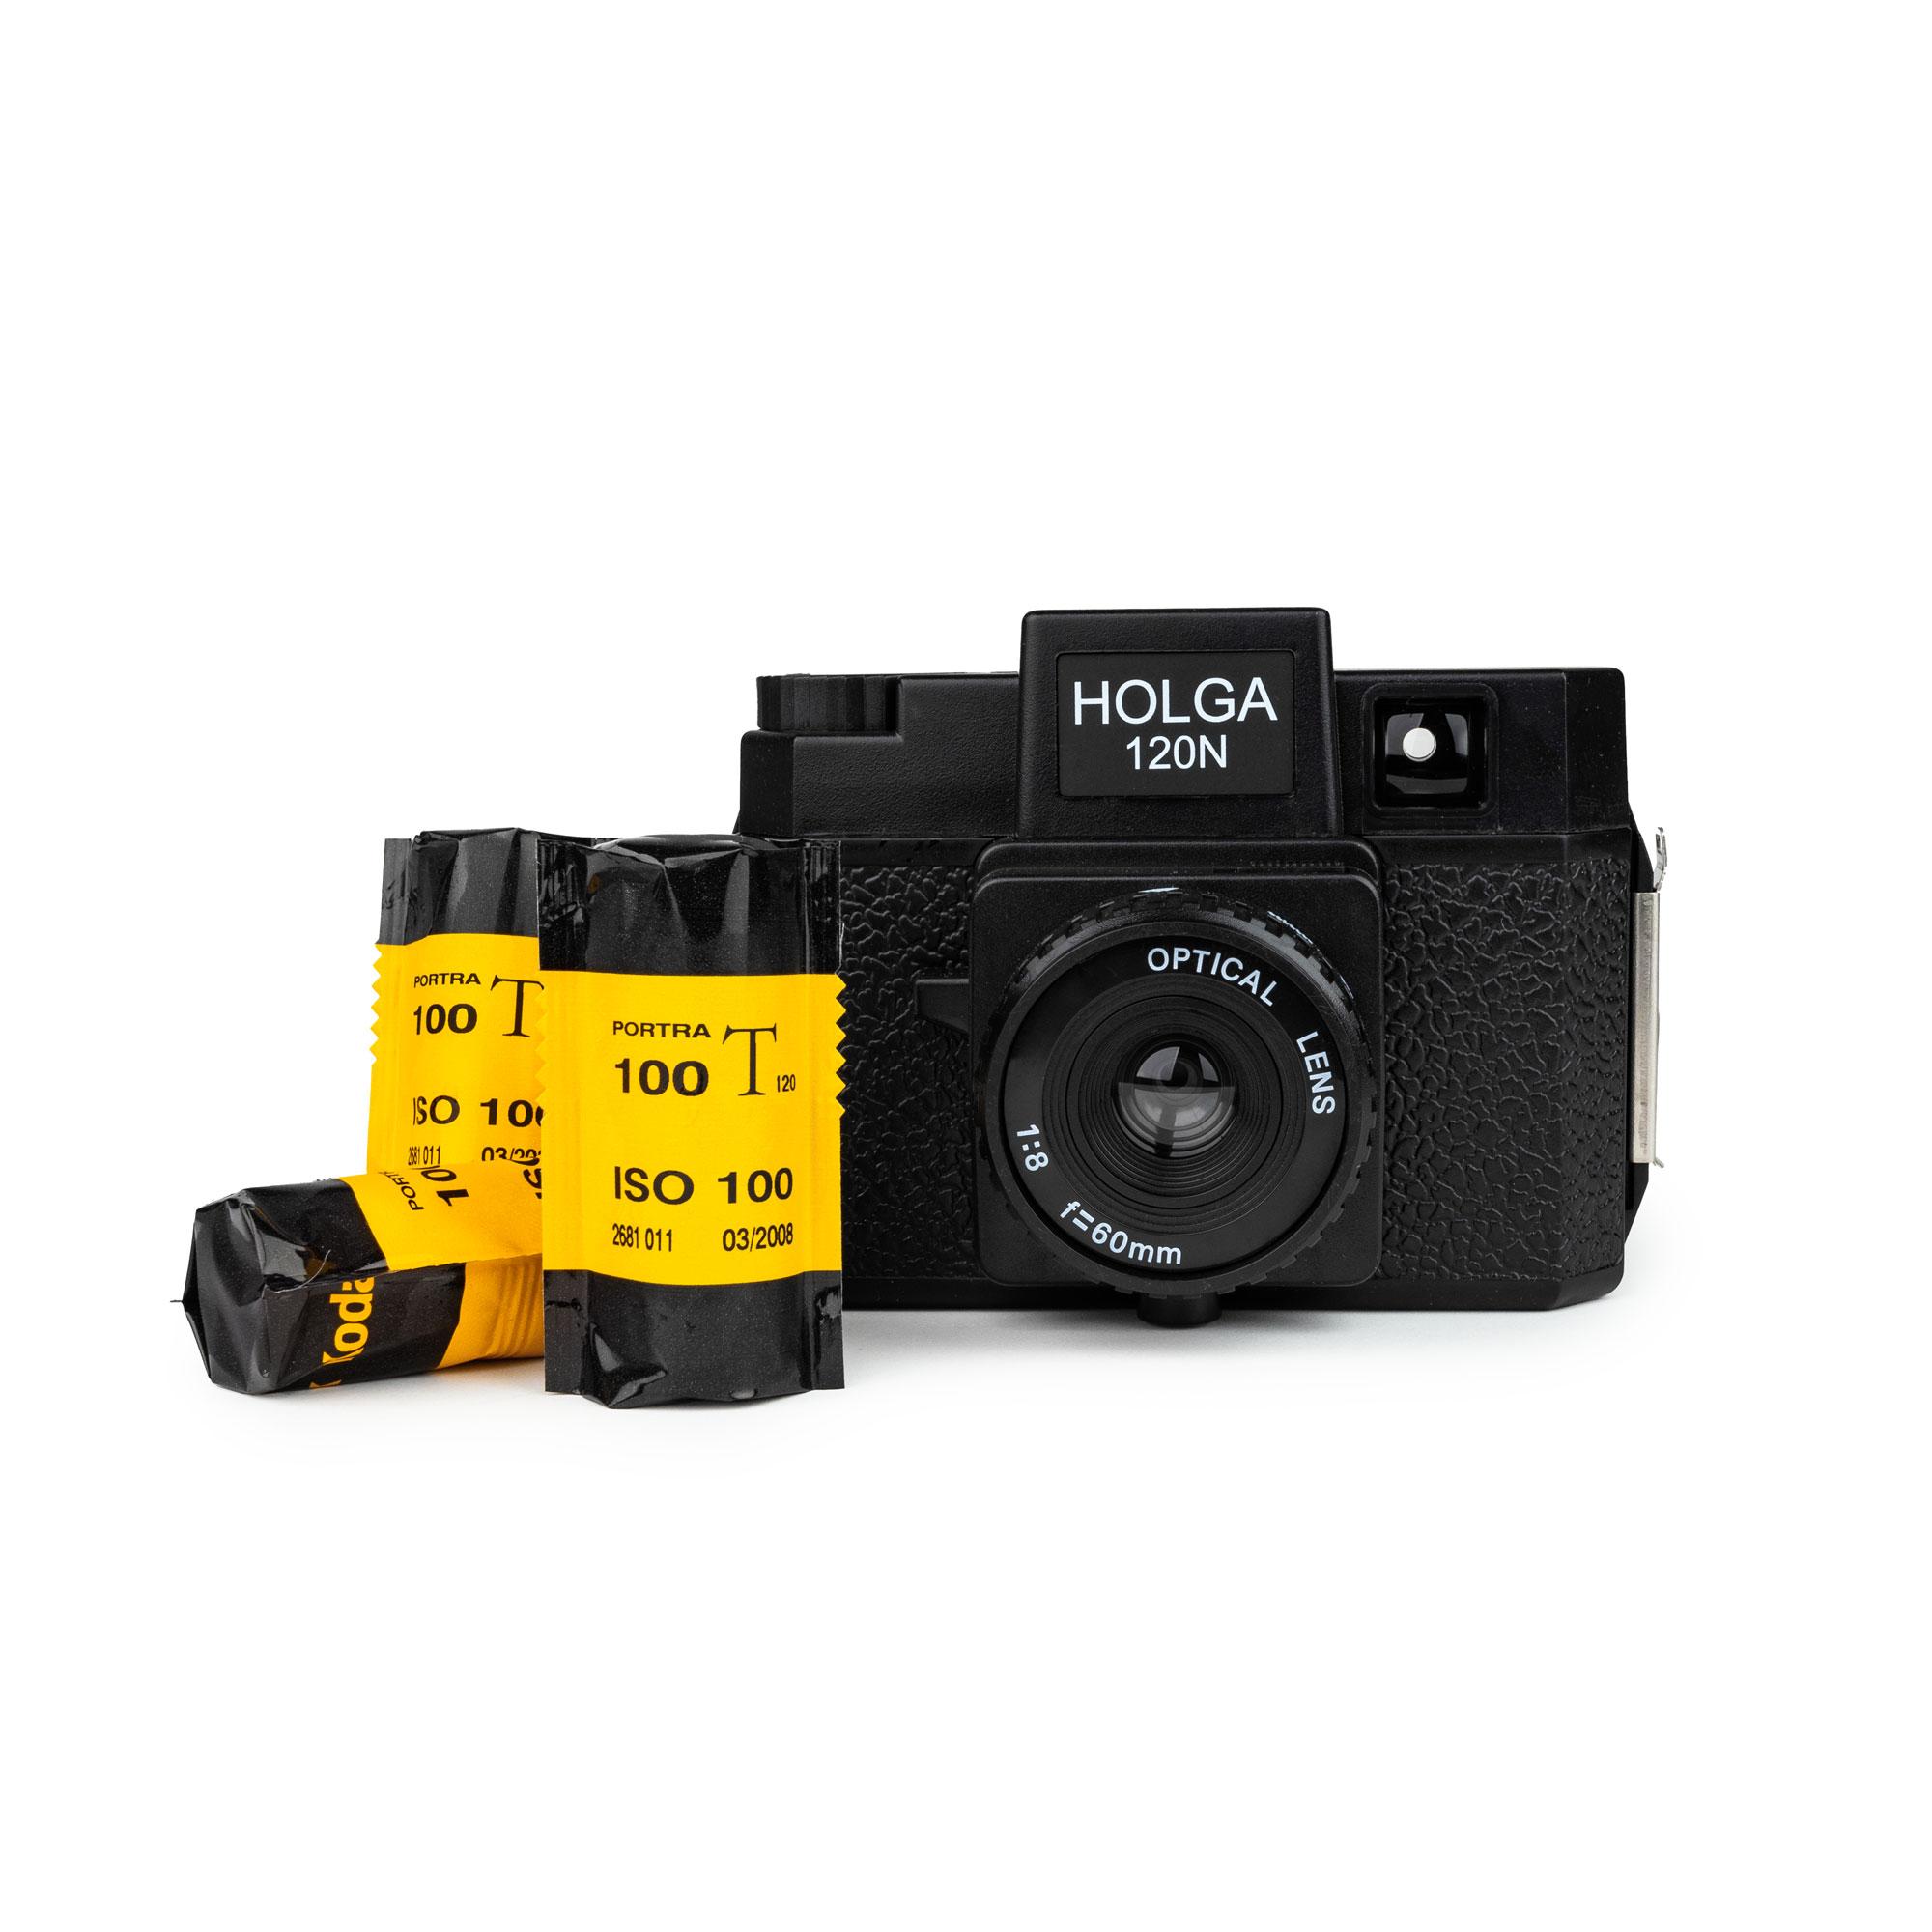 Set HOLGA 120 N appareil photo pour 120 rouleaux de film noir 3x Kodak Portra 100T 120